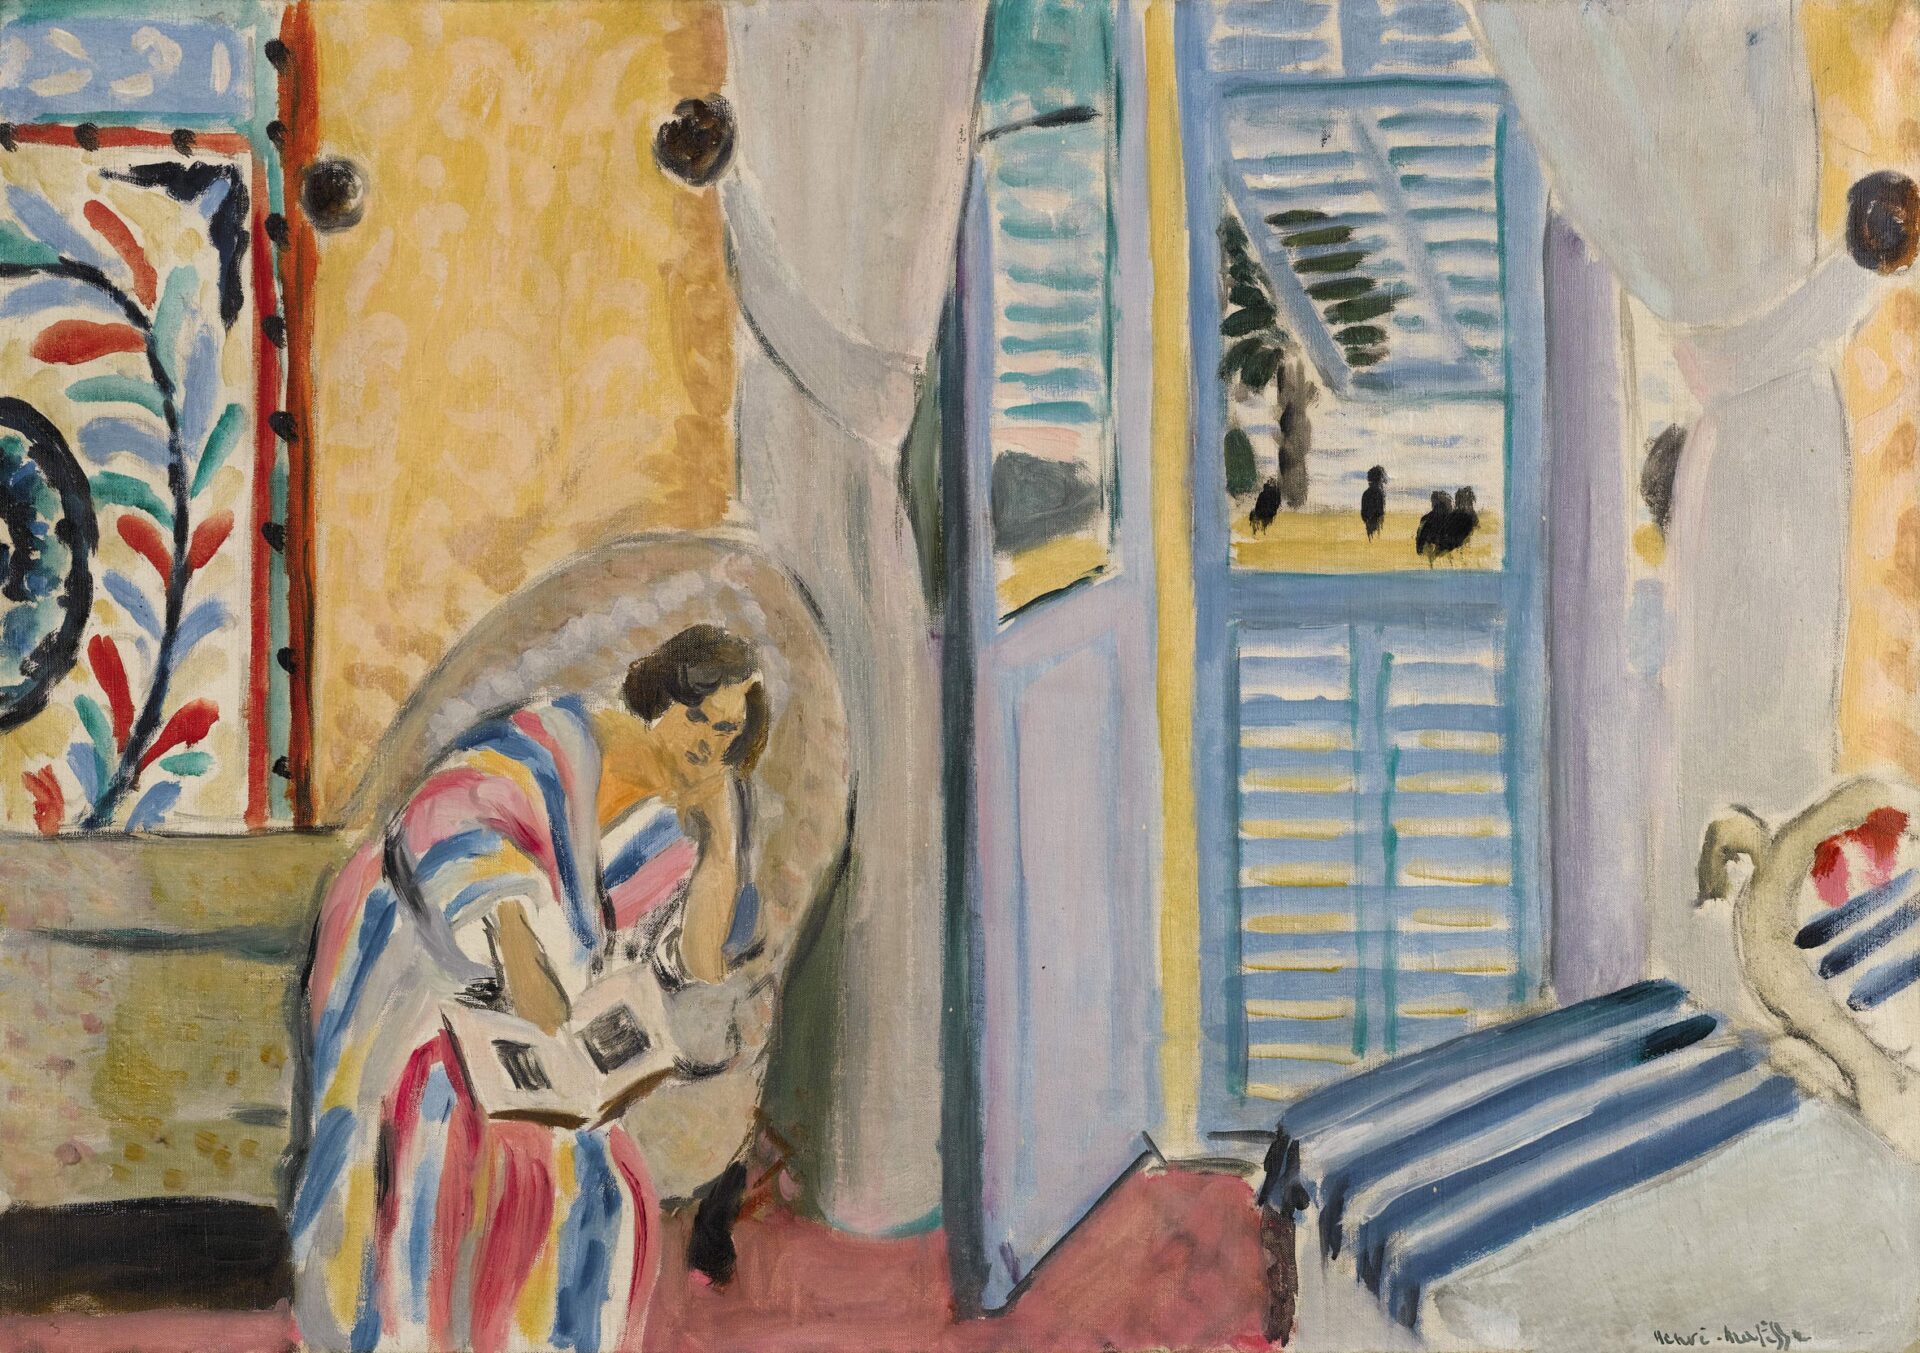 Interiéur à Nice, femme assise avec un livre, 1919